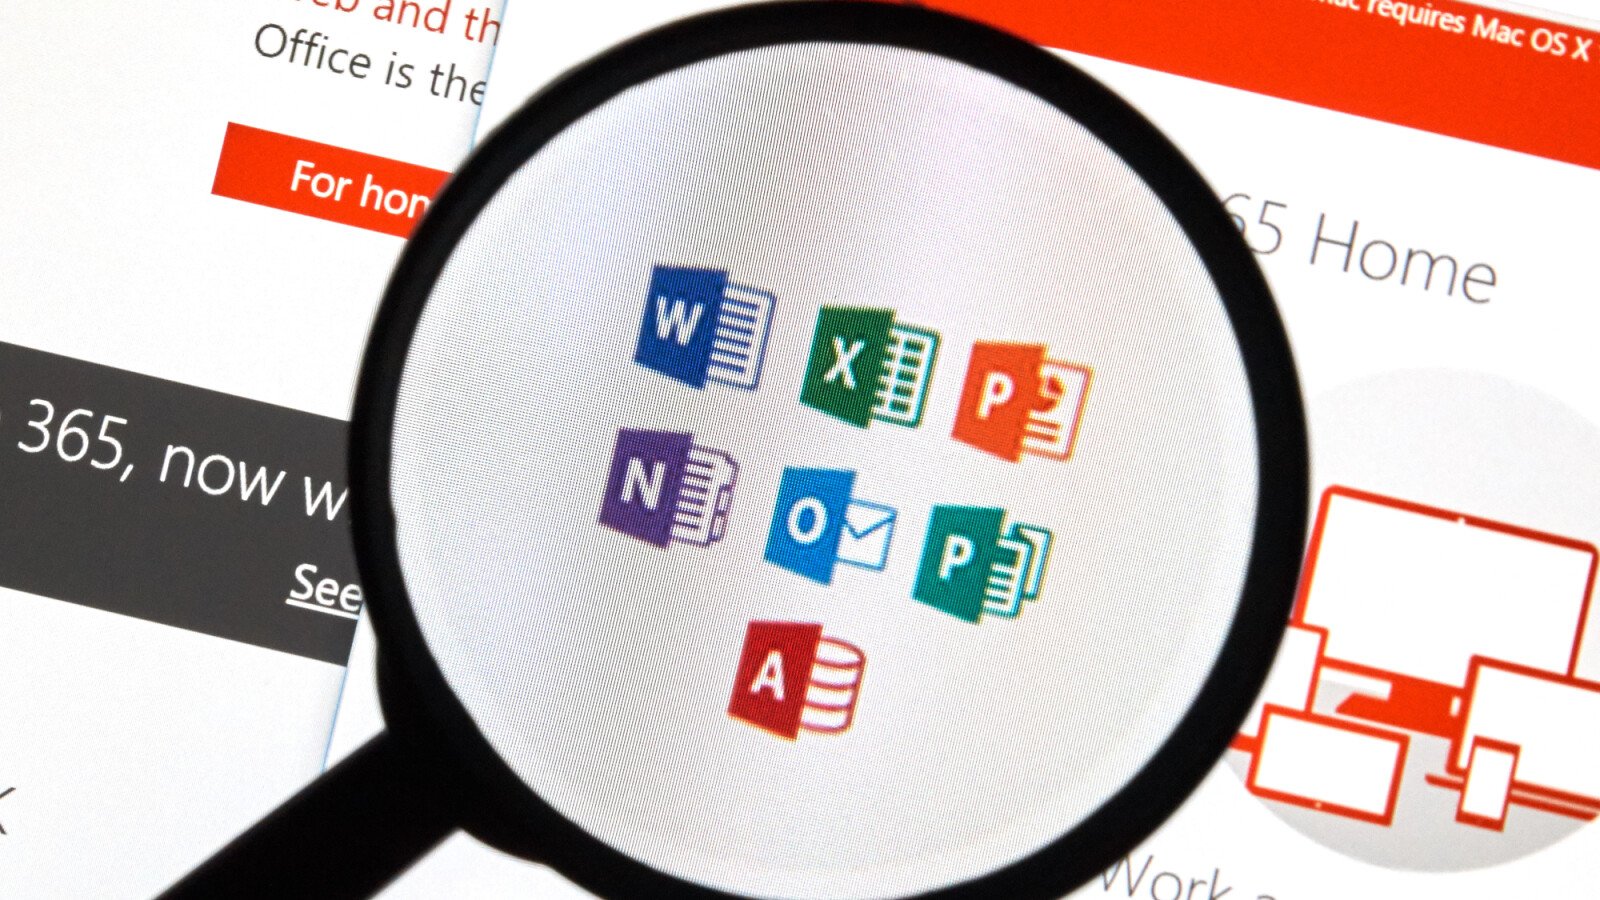 Microsoft Office 365 offenbar down: Login- und Server-Probleme (Update)